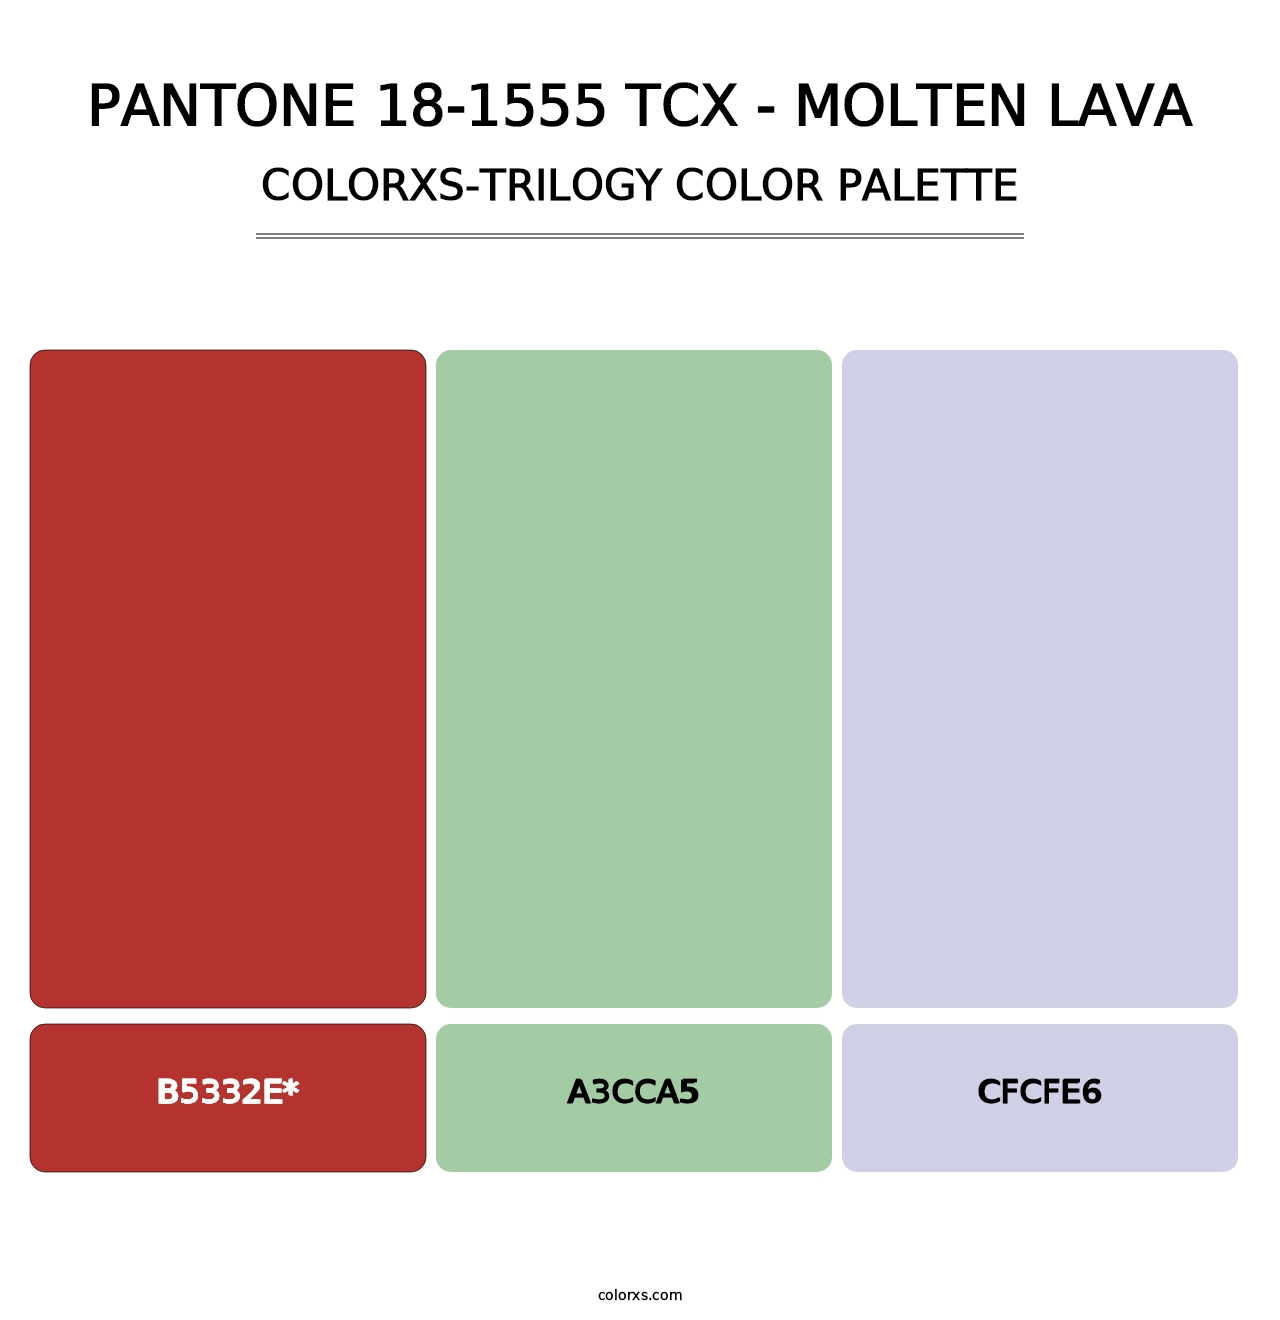 PANTONE 18-1555 TCX - Molten Lava - Colorxs Trilogy Palette